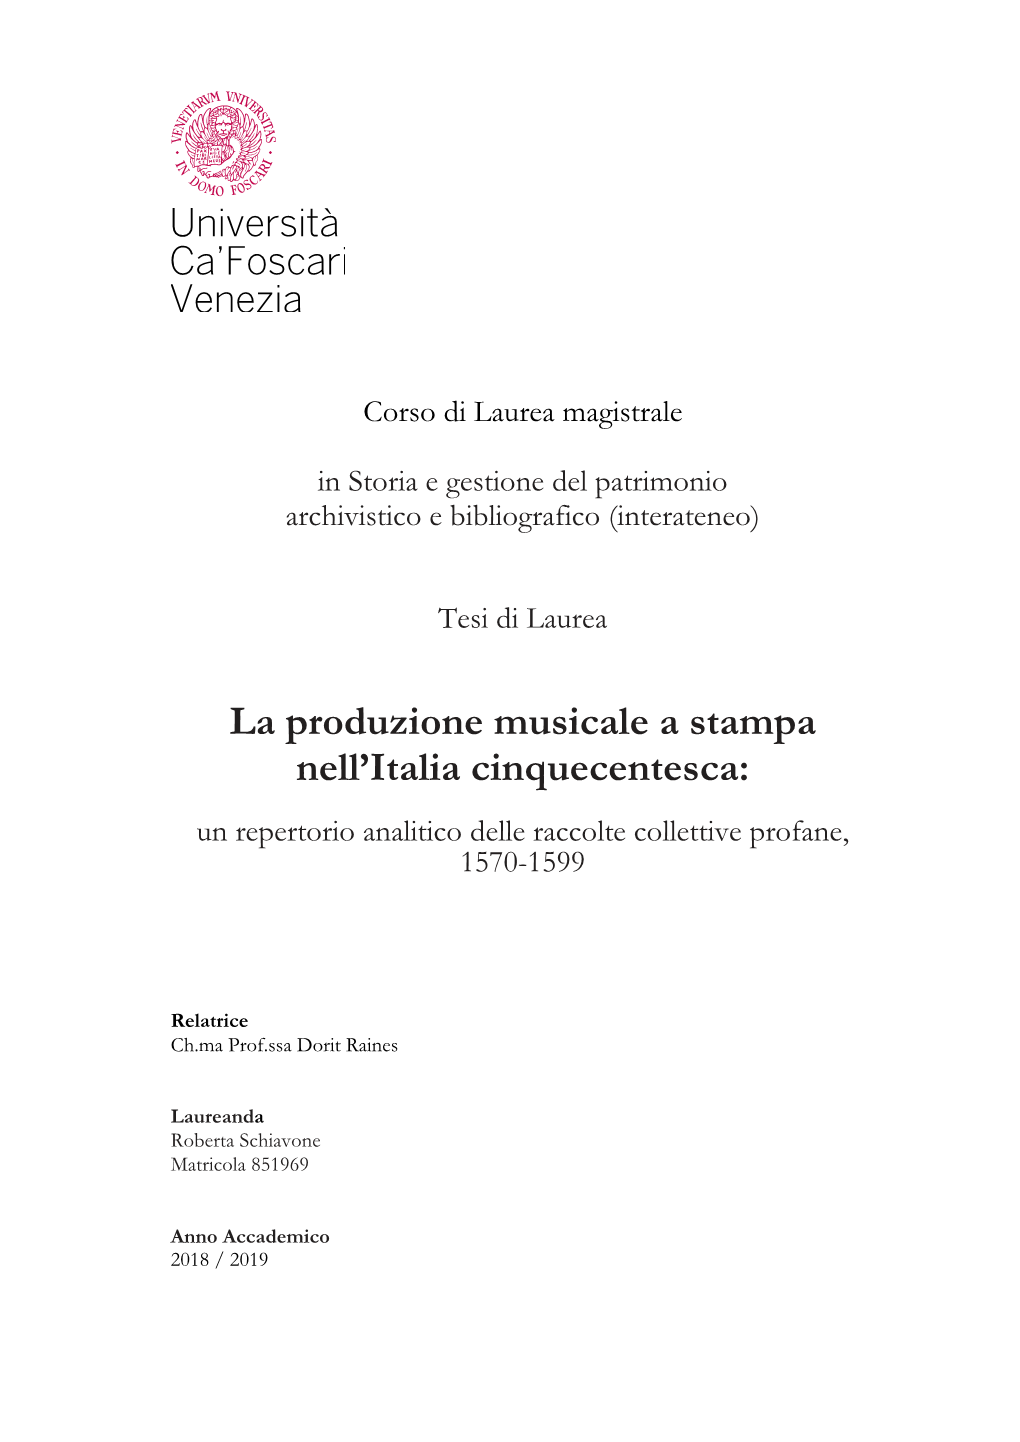 La Produzione Musicale a Stampa Nell'italia Cinquecentesca